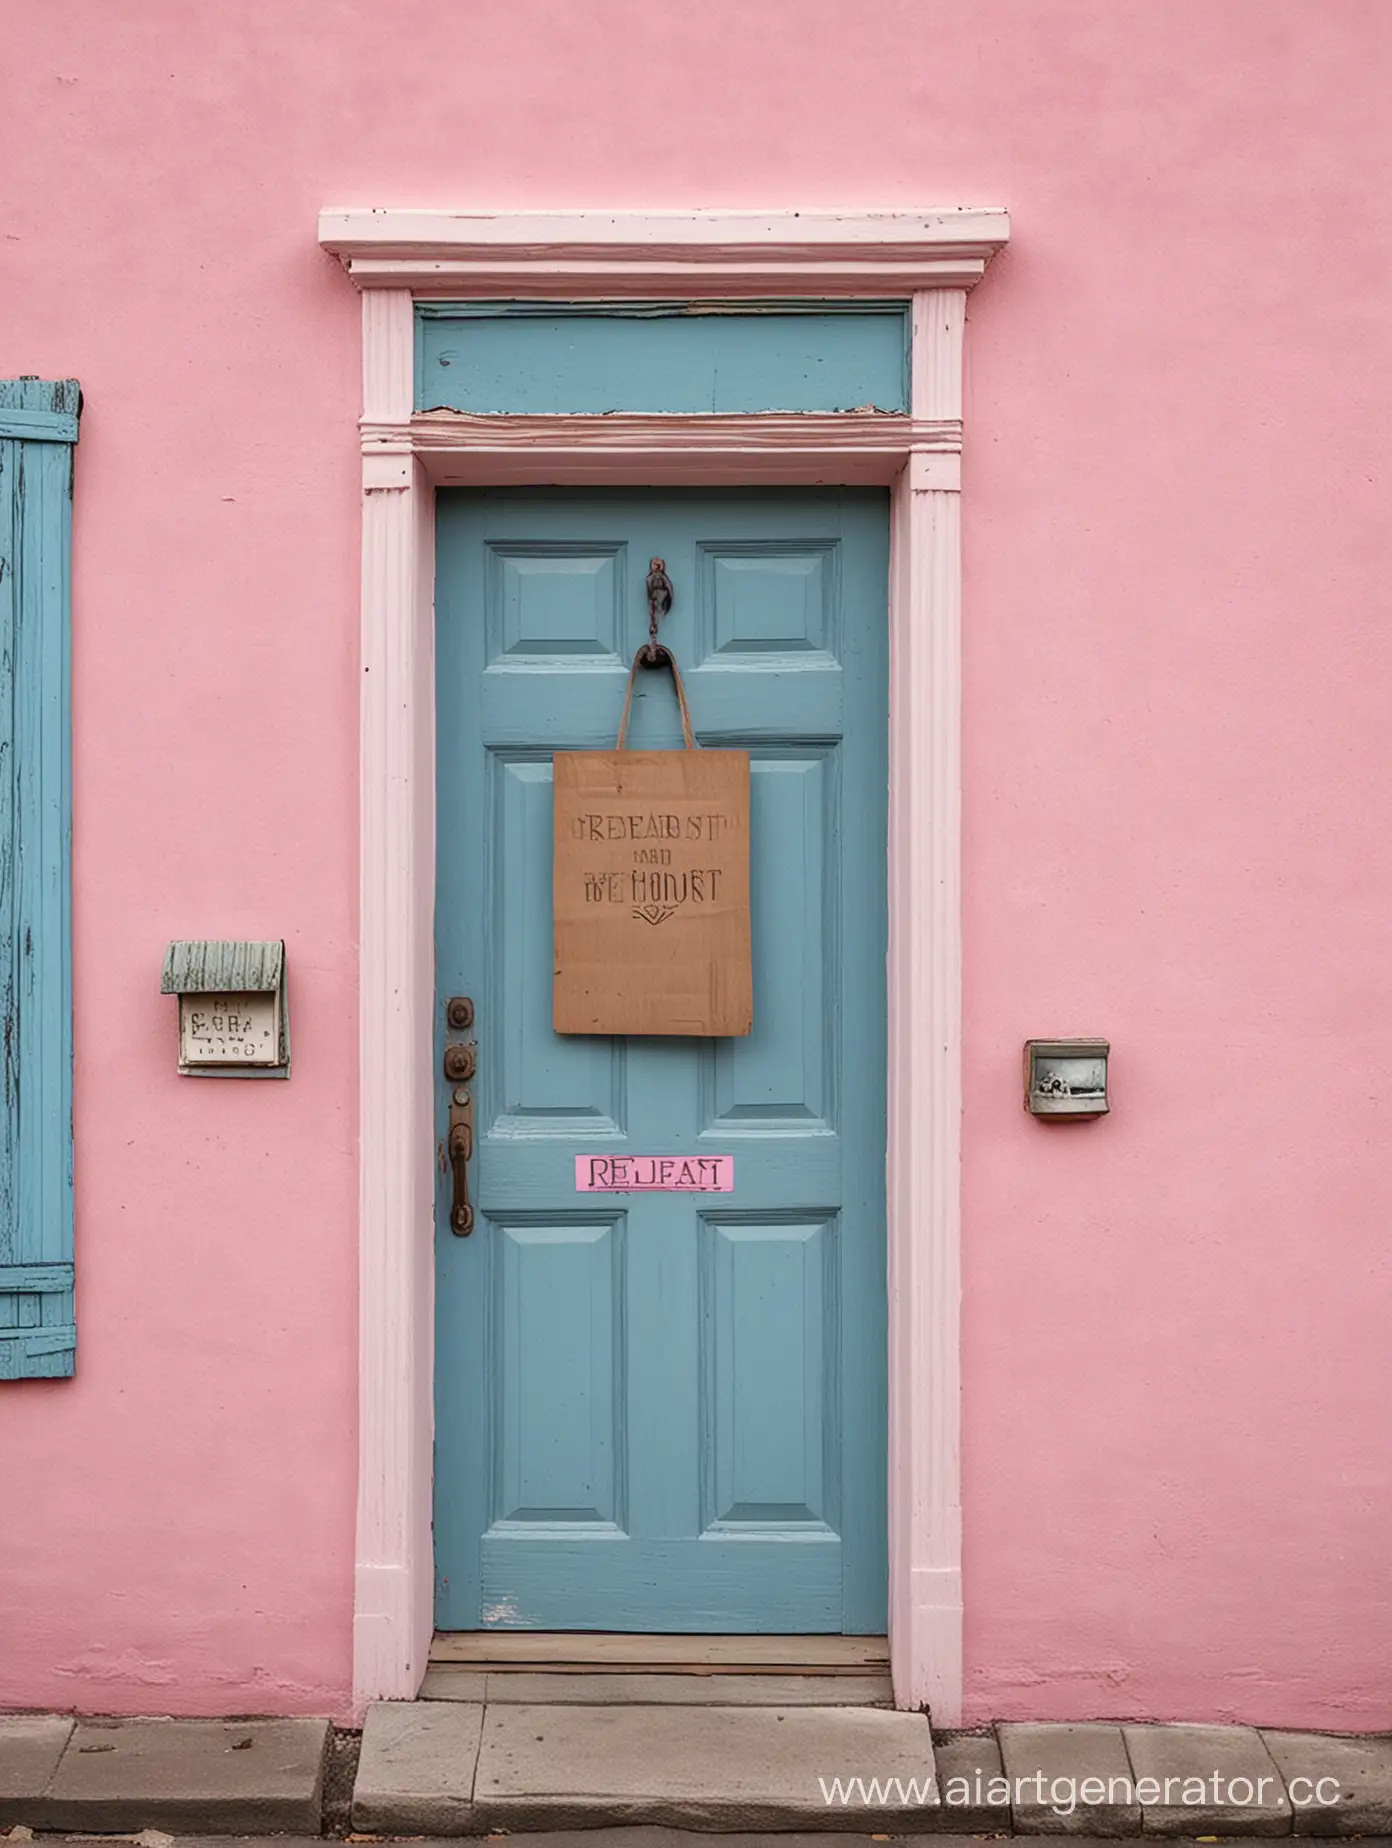 На синей двери в доме с розовыми стенами весит табличка с надписью «Перезагрузка» 